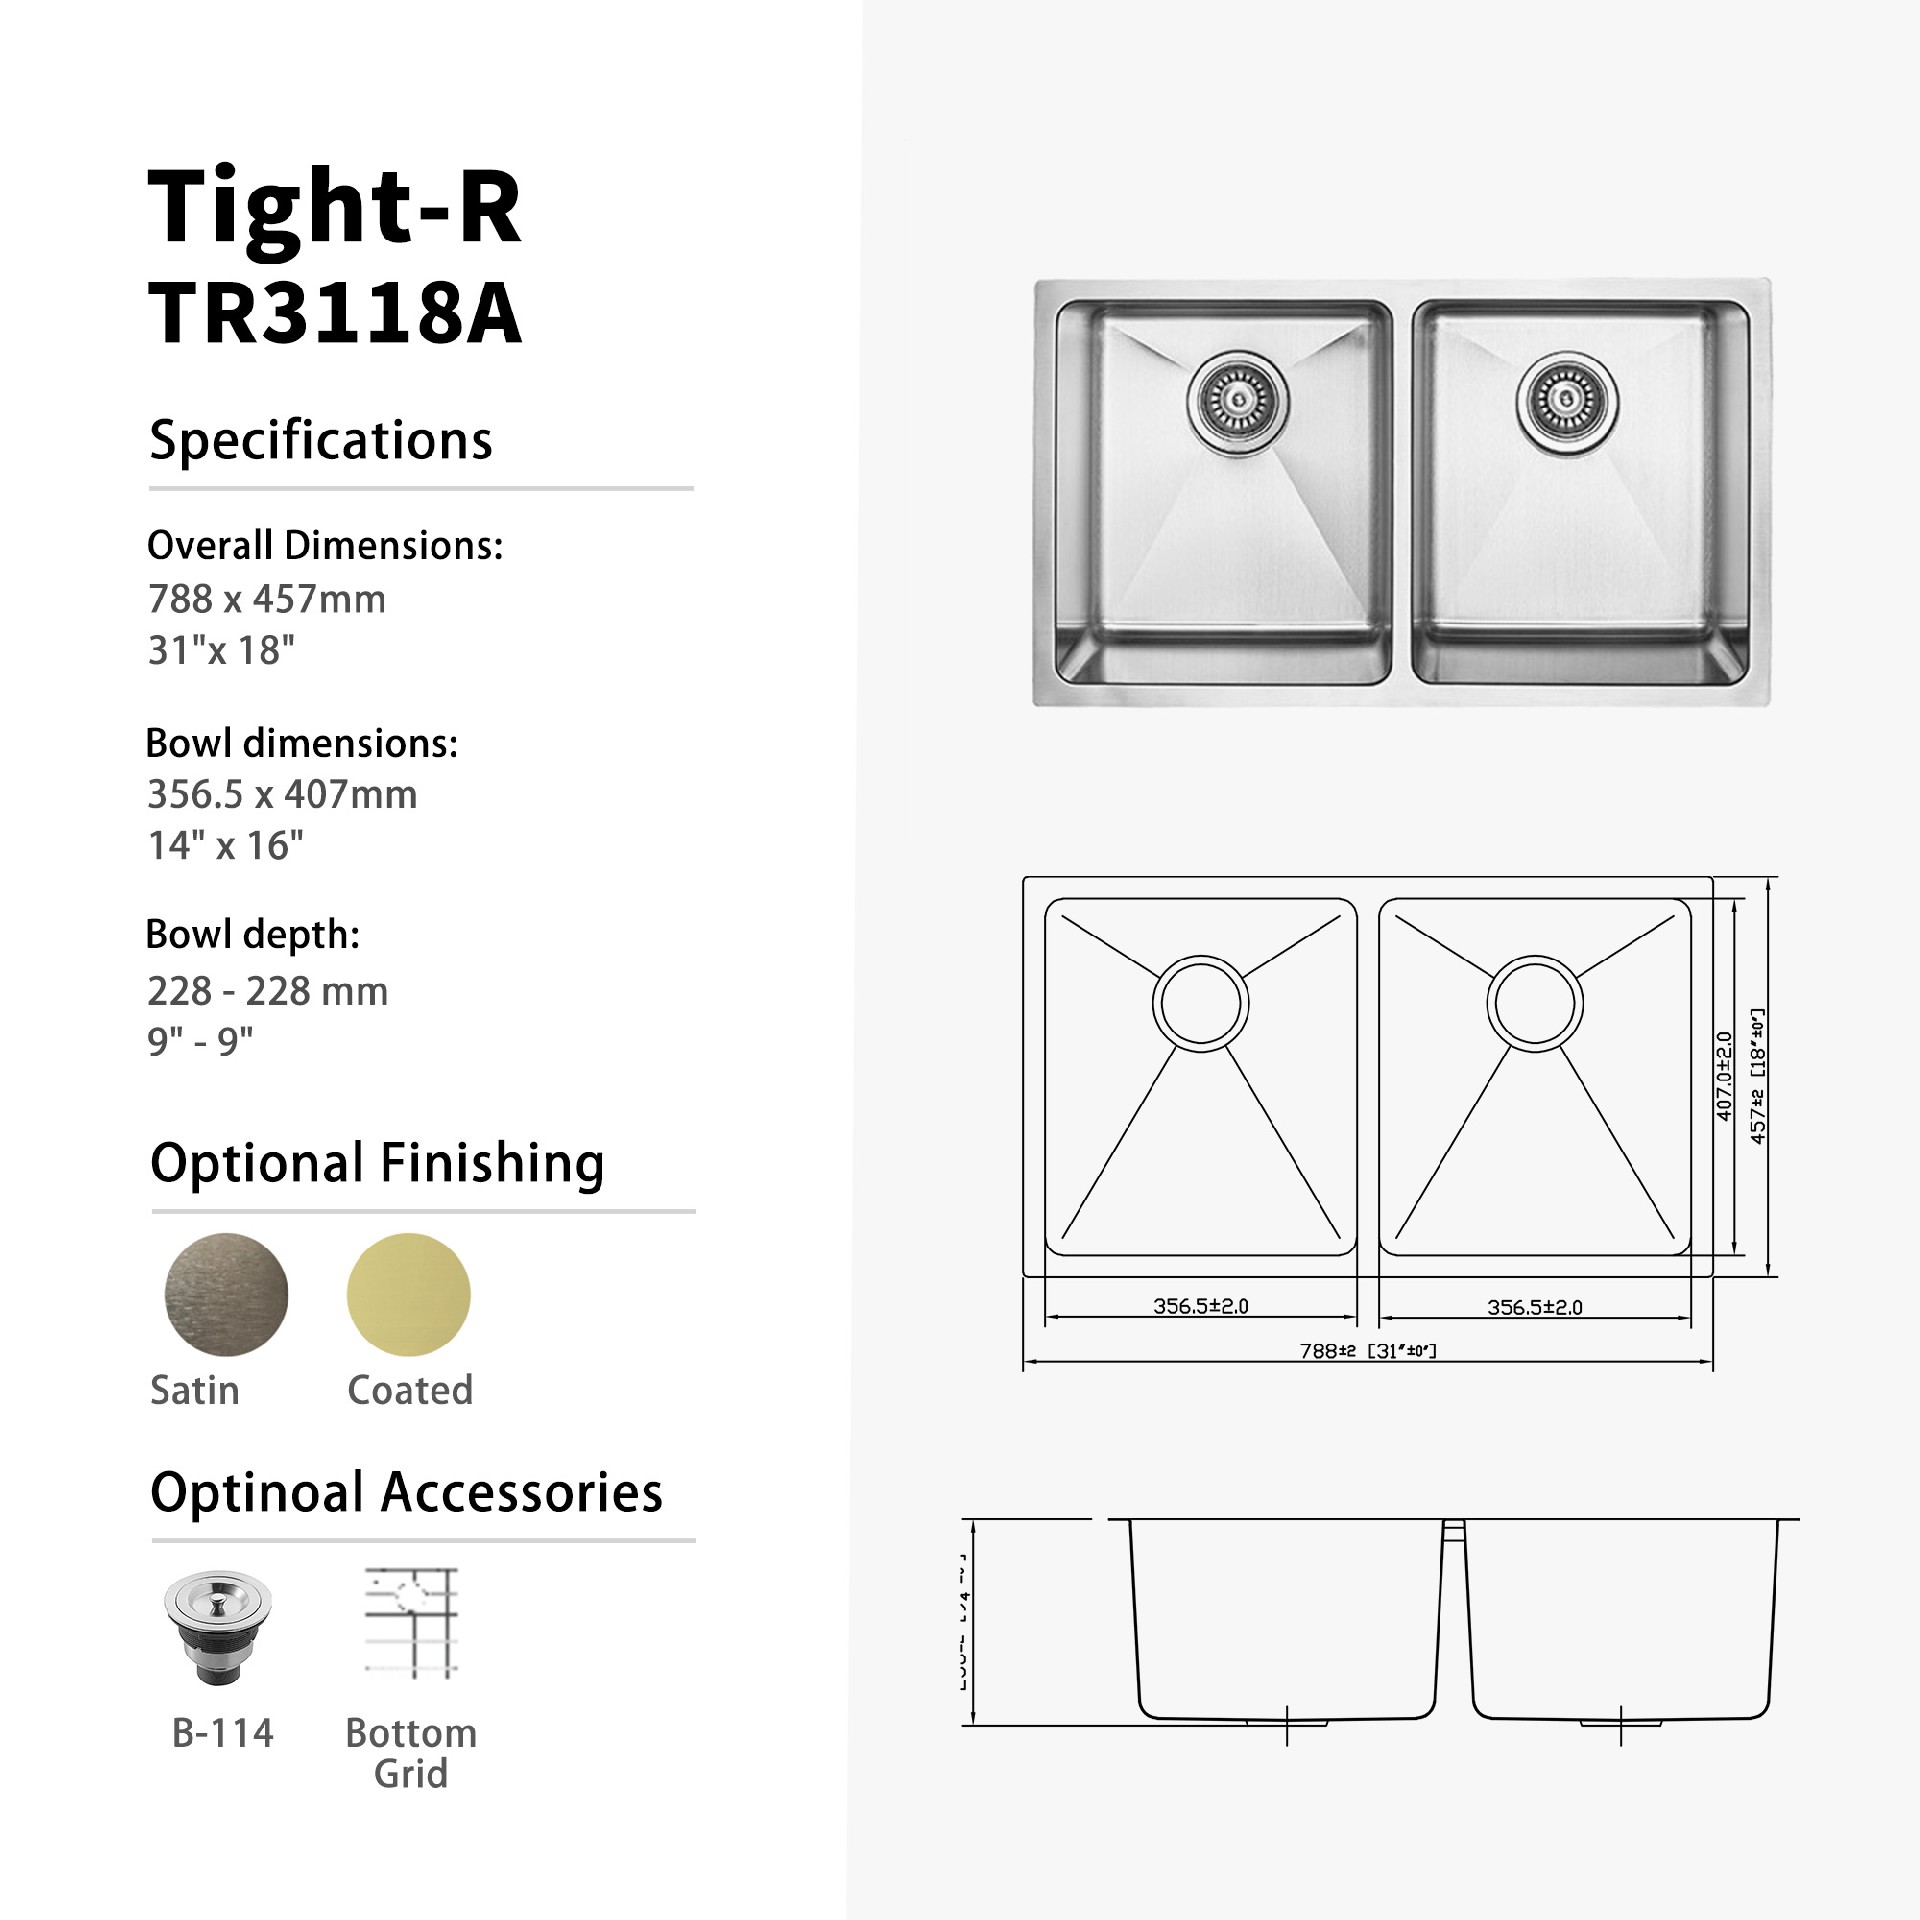 Tight-R.TR3118A